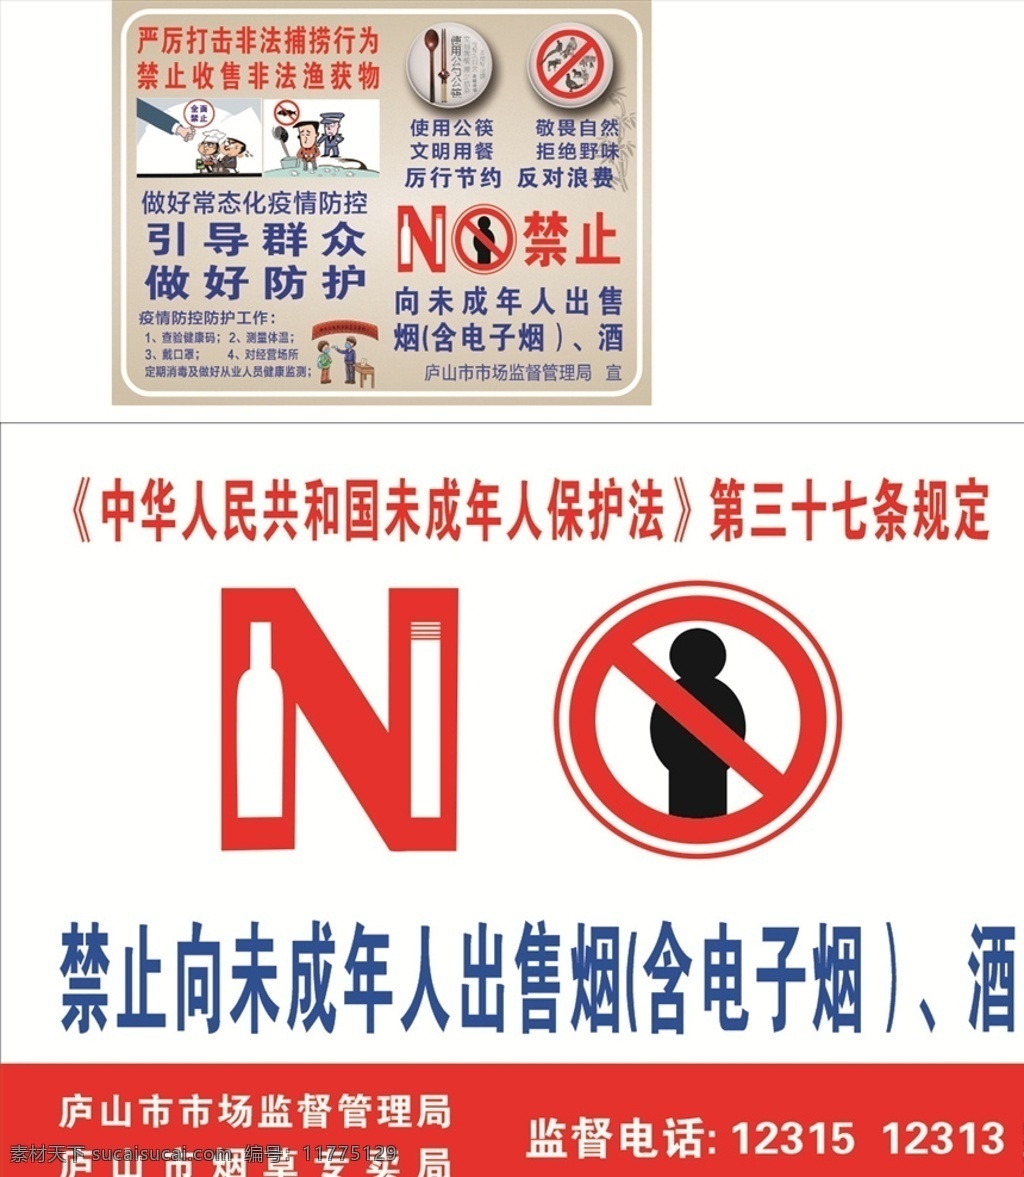 禁烟酒图片 禁烟 禁酒 禁止捕鱼 公筷 禁止浪费